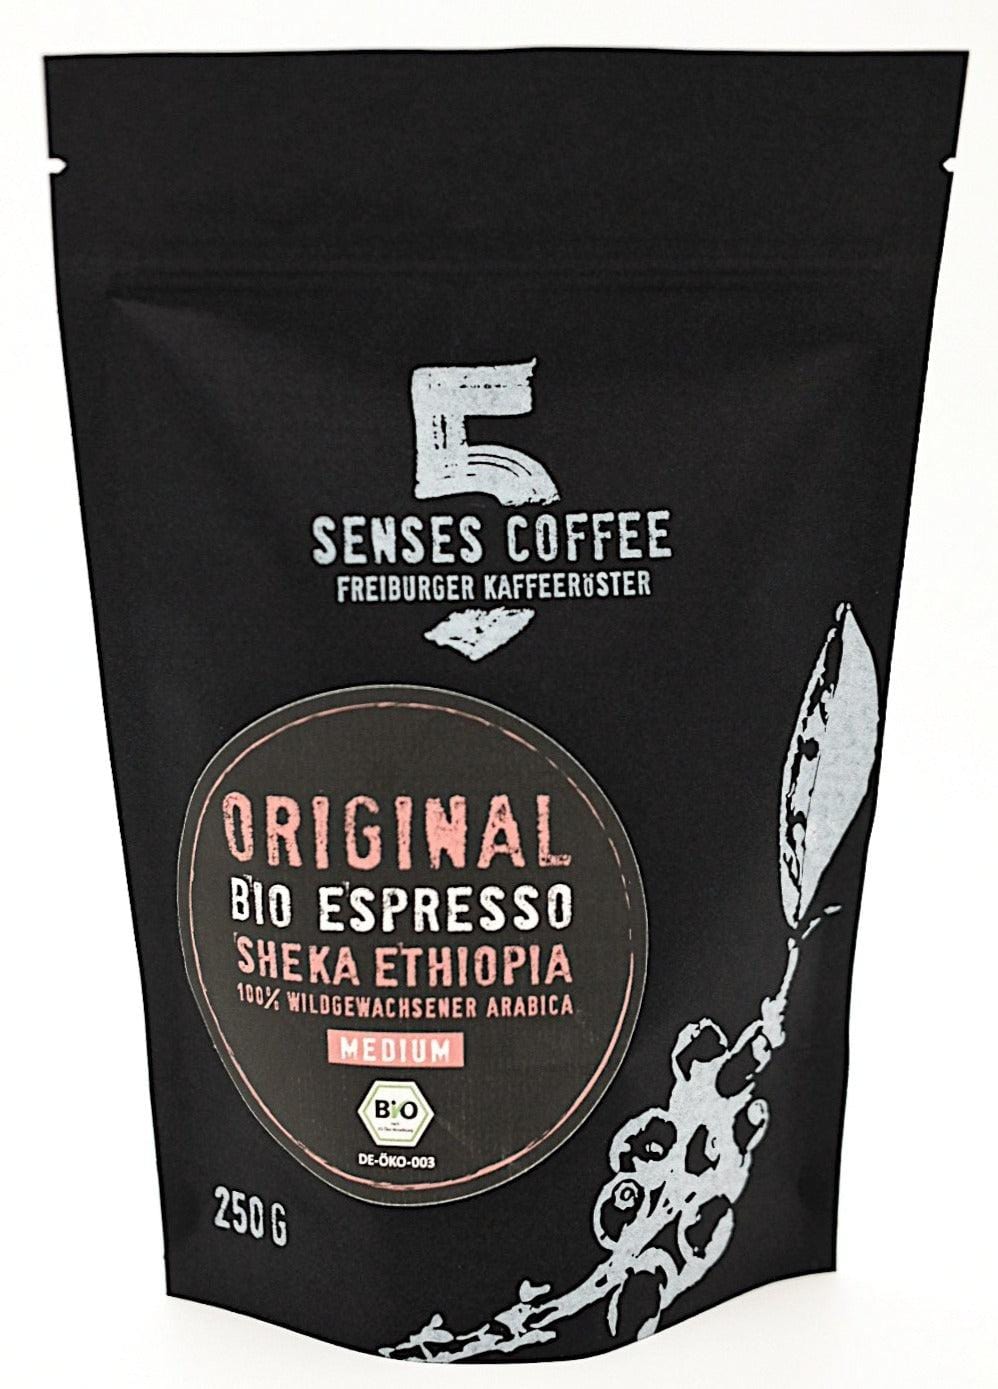 5 SENSES ORIGINAL BIO-ESPRESSO ÄTHIOPIEN 5 Senses Coffee